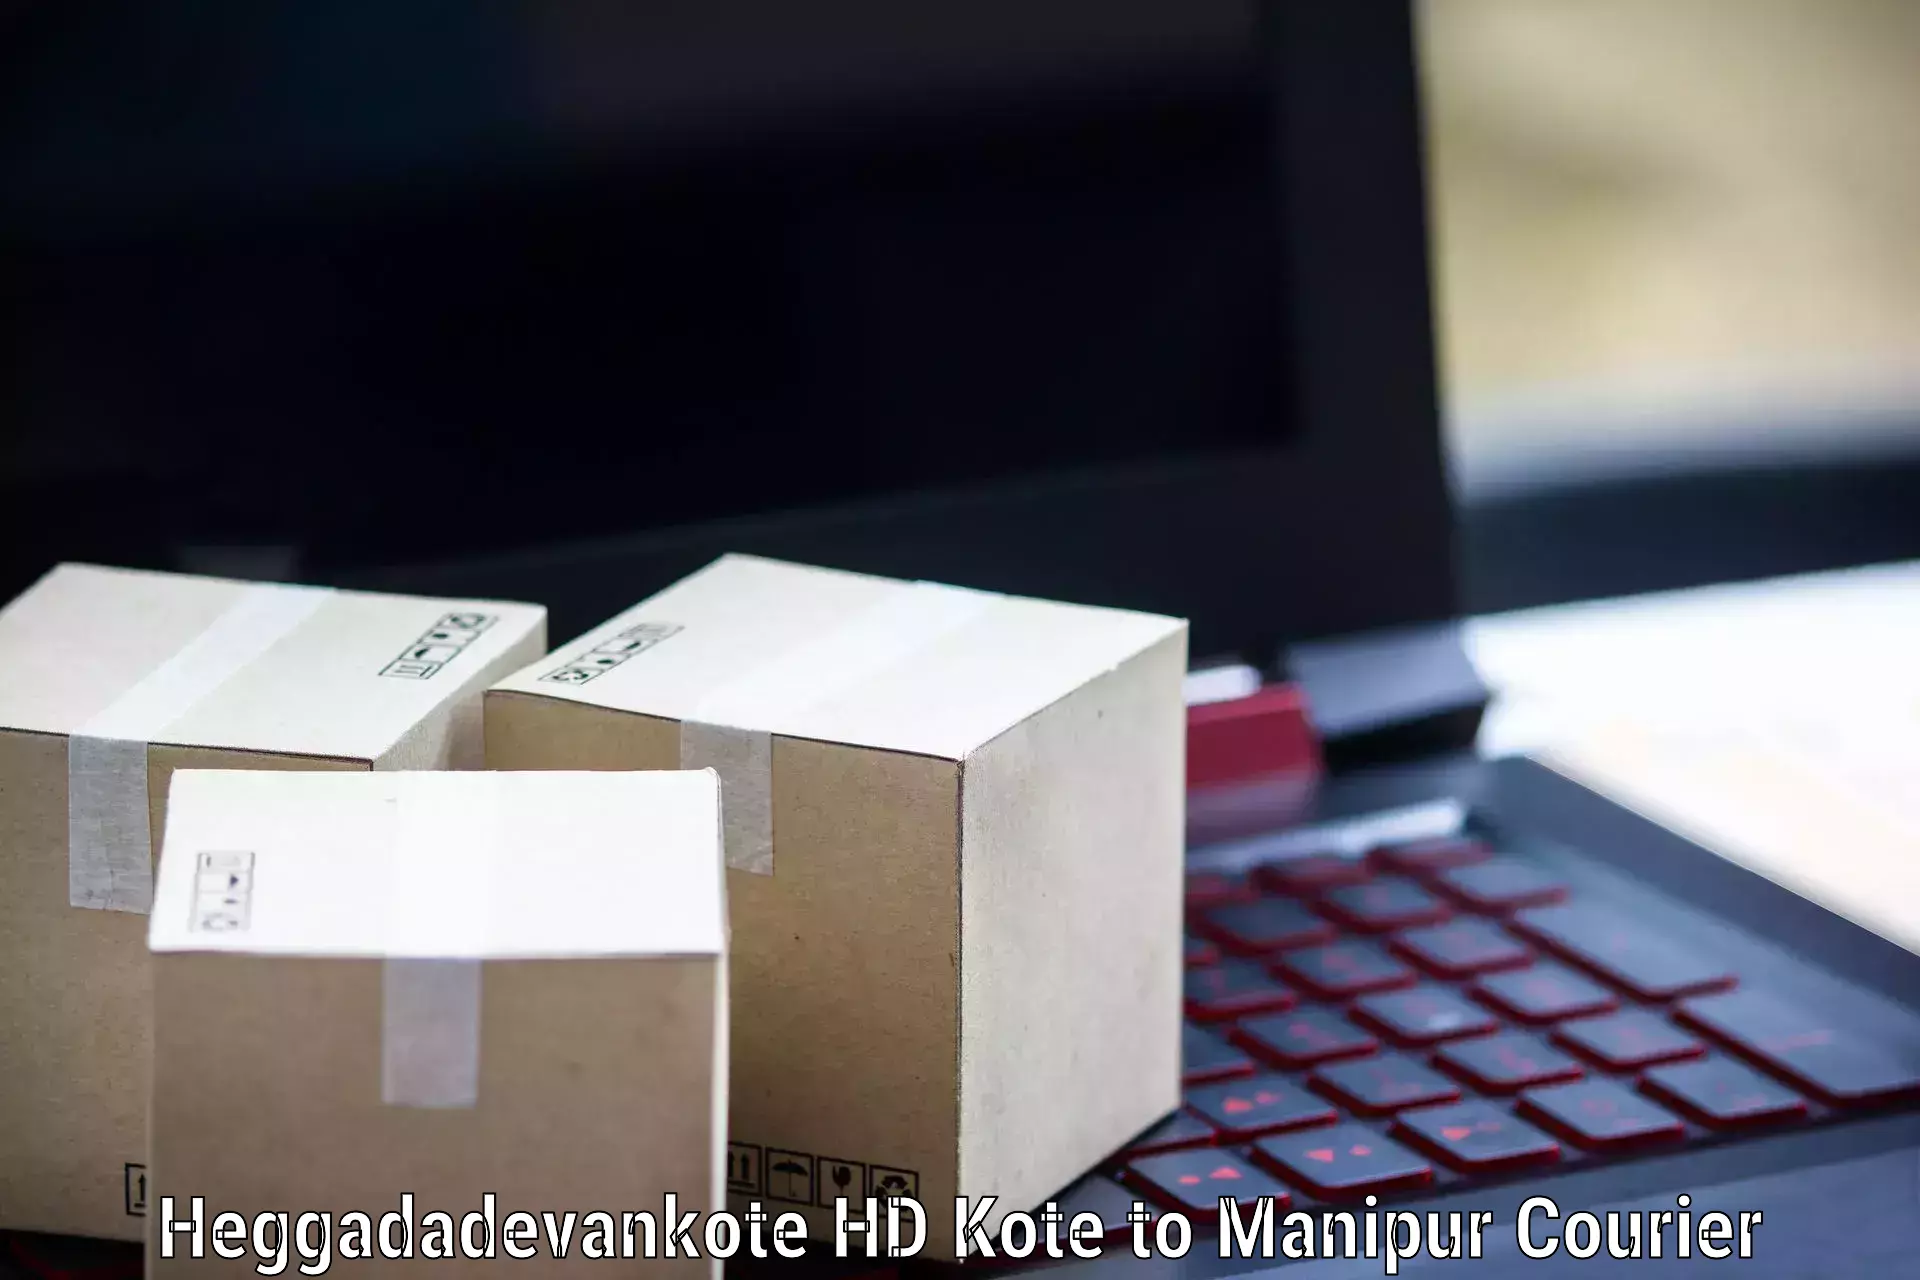 Next-generation courier services Heggadadevankote HD Kote to Kangpokpi